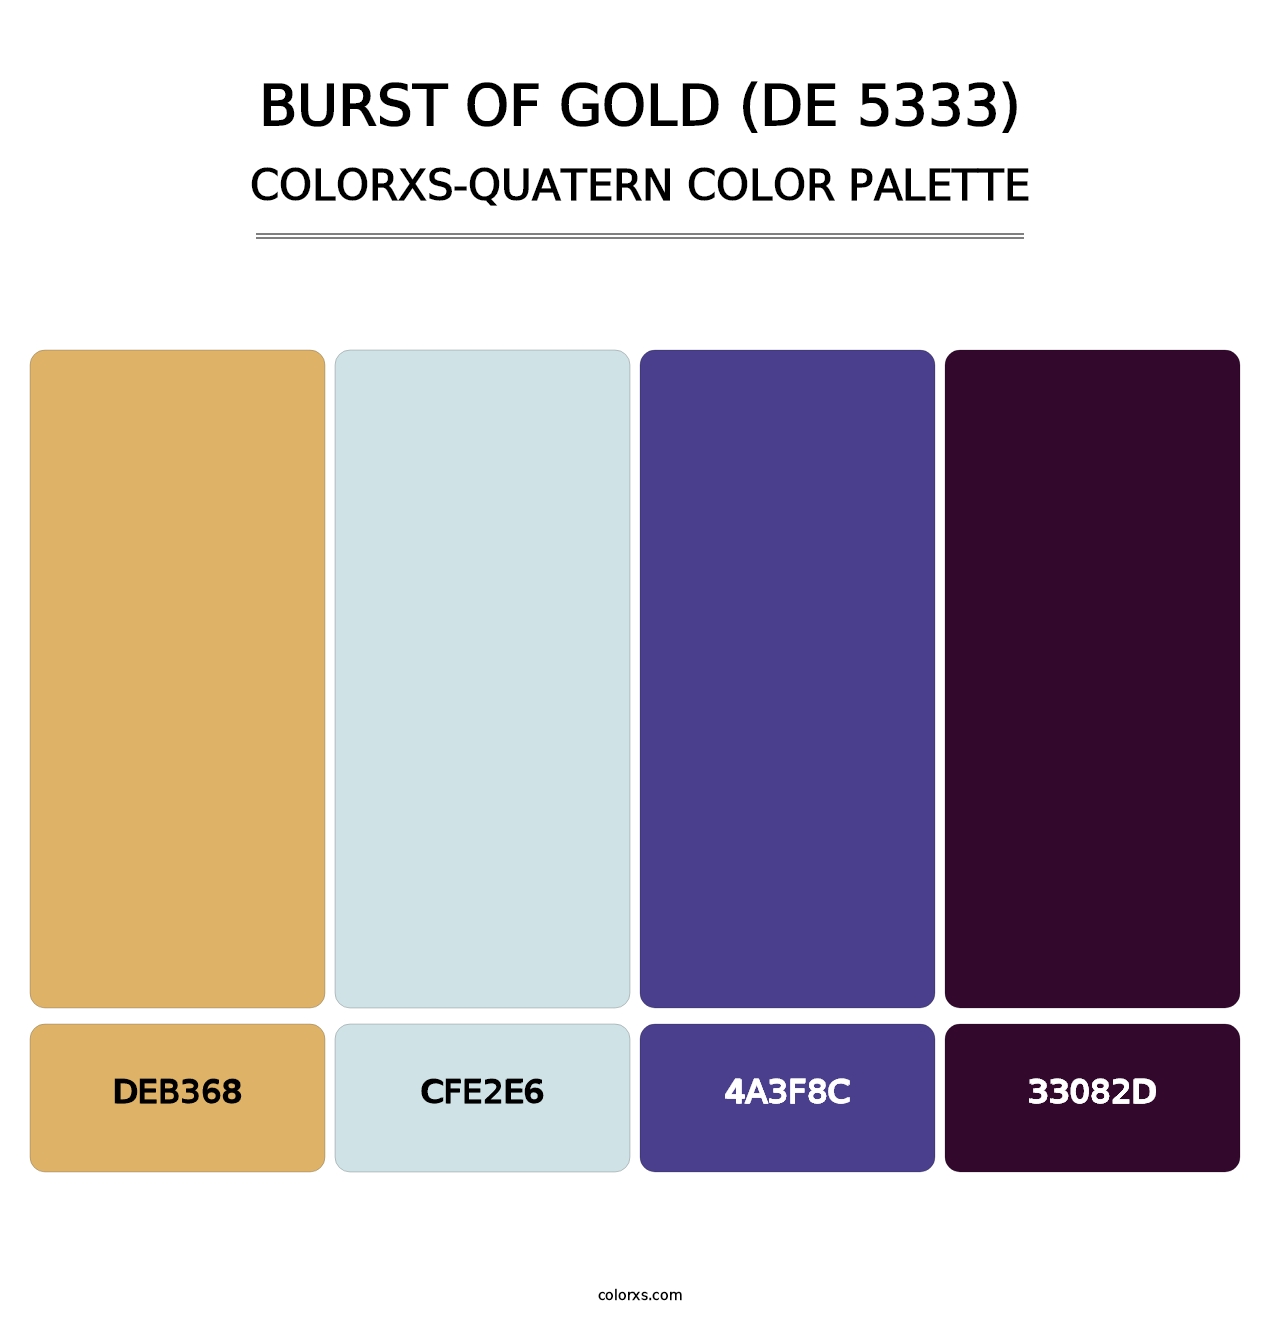 Burst of Gold (DE 5333) - Colorxs Quatern Palette